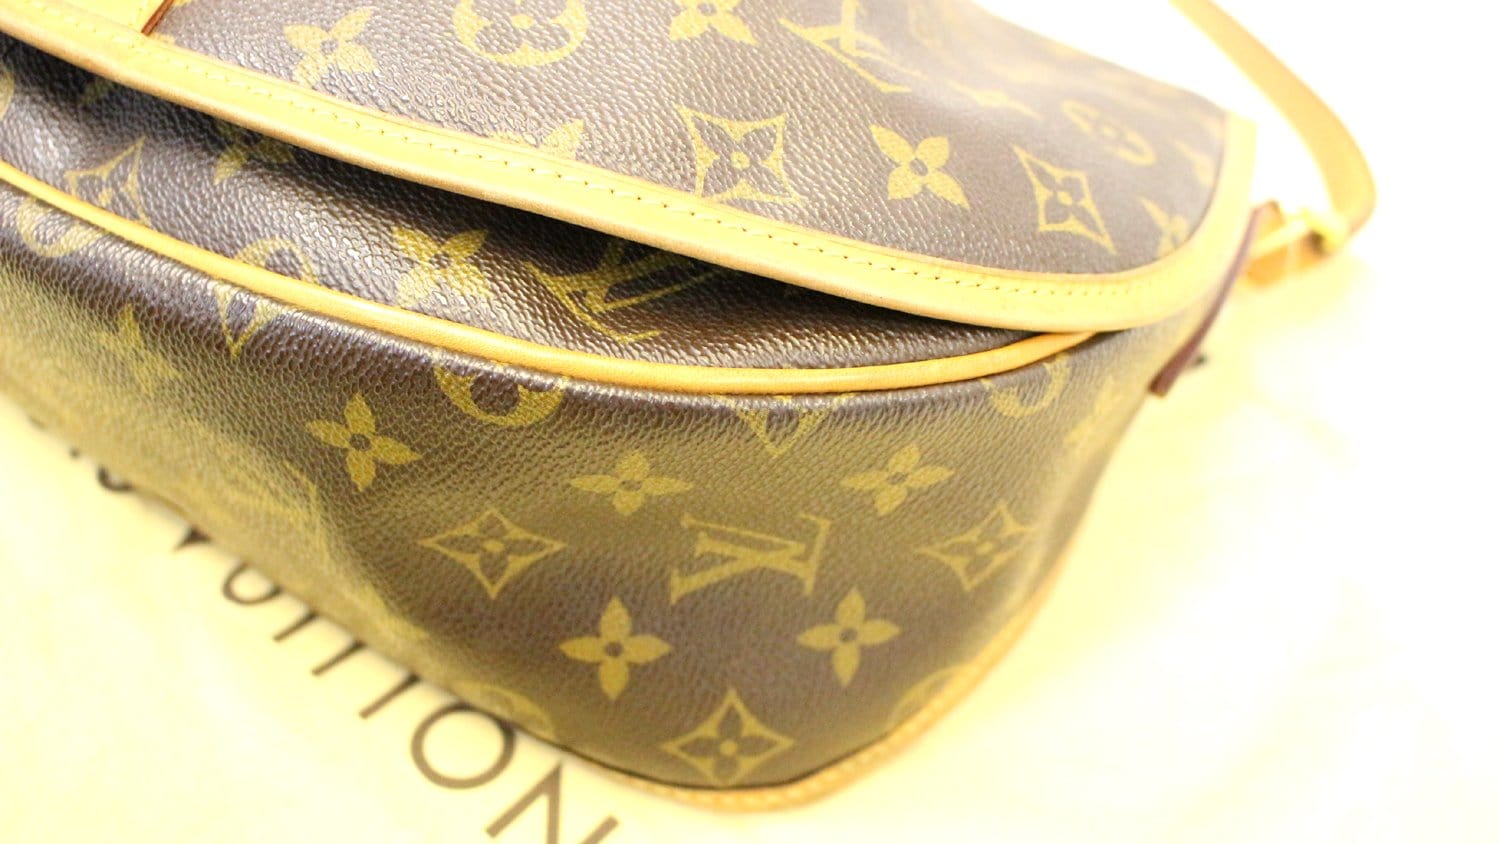 Louis Vuitton 2012 pre-owned Menilmontant MM Messenger Bag - Farfetch